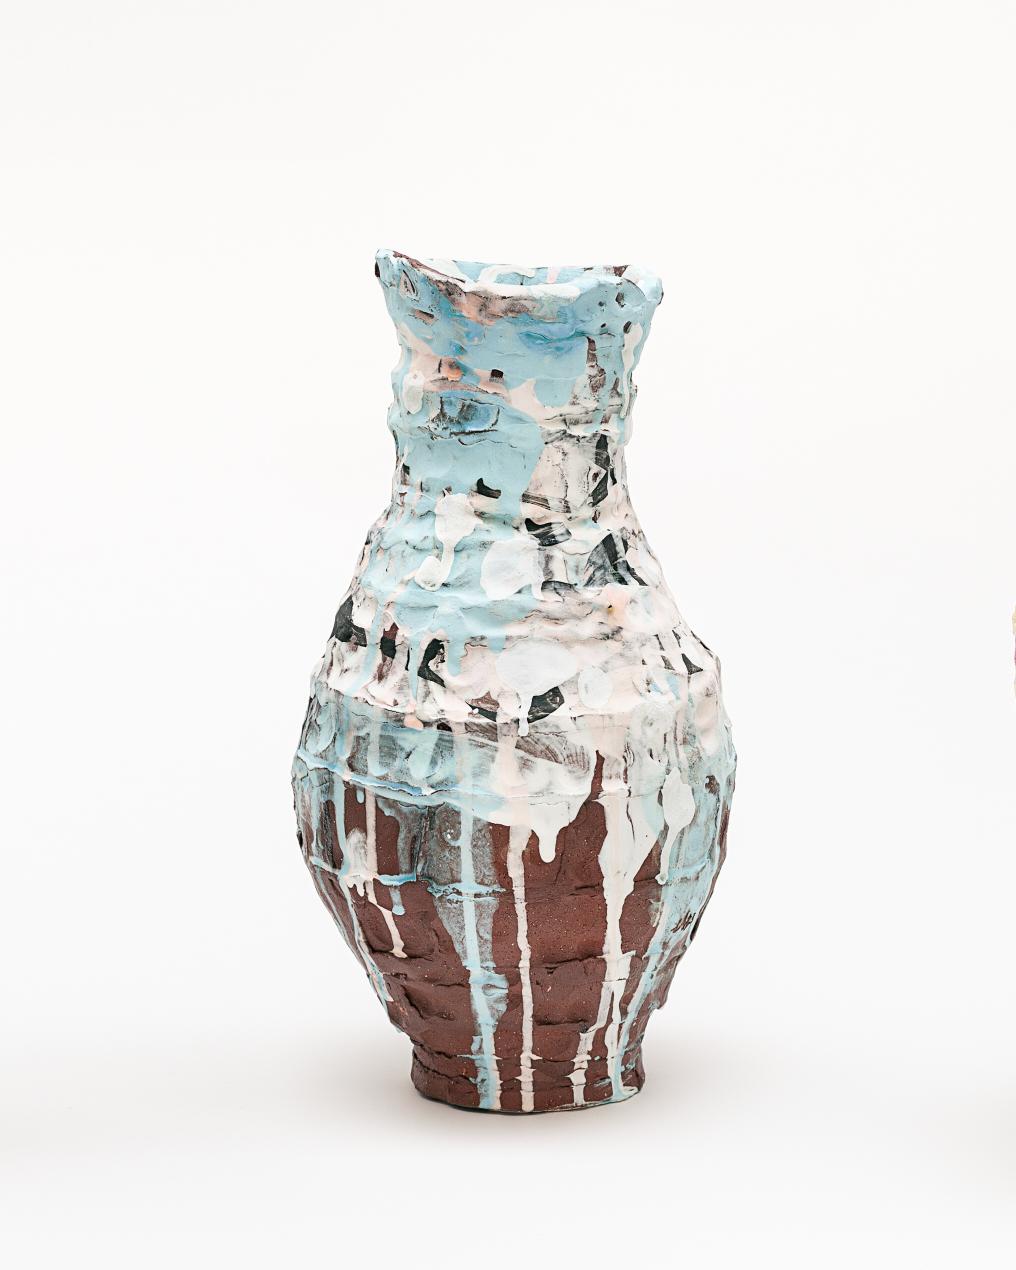 Placida-Vase von Elke Sada
Einzigartiges Stück
Abmessungen: B 18 x T 17,5 x H 36 cm
MATERIALIEN: Roter Ton, farbiger Schlicker, transparente Glasur.

Das Faszinierende und Auffallende an der Keramikkunst von Elke Sada ist nicht nur die strahlende